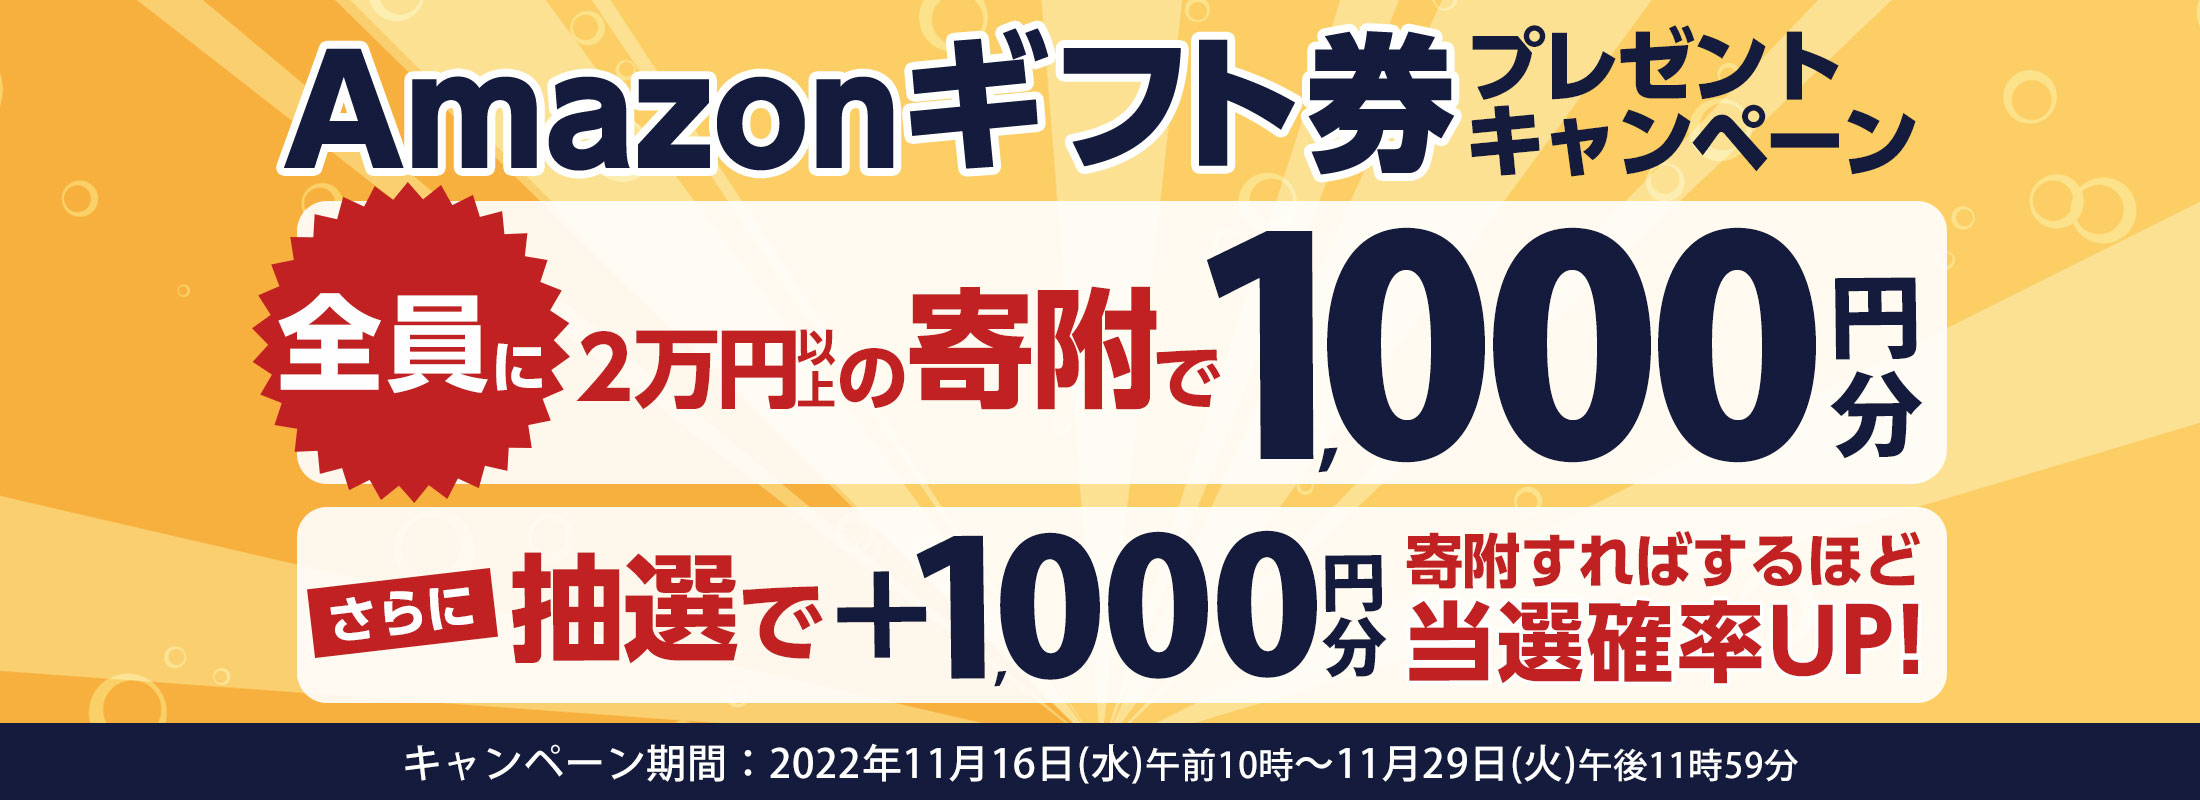 合計2万円以上の寄附でAmazonギフト券1,000円分プレゼントキャンペーン